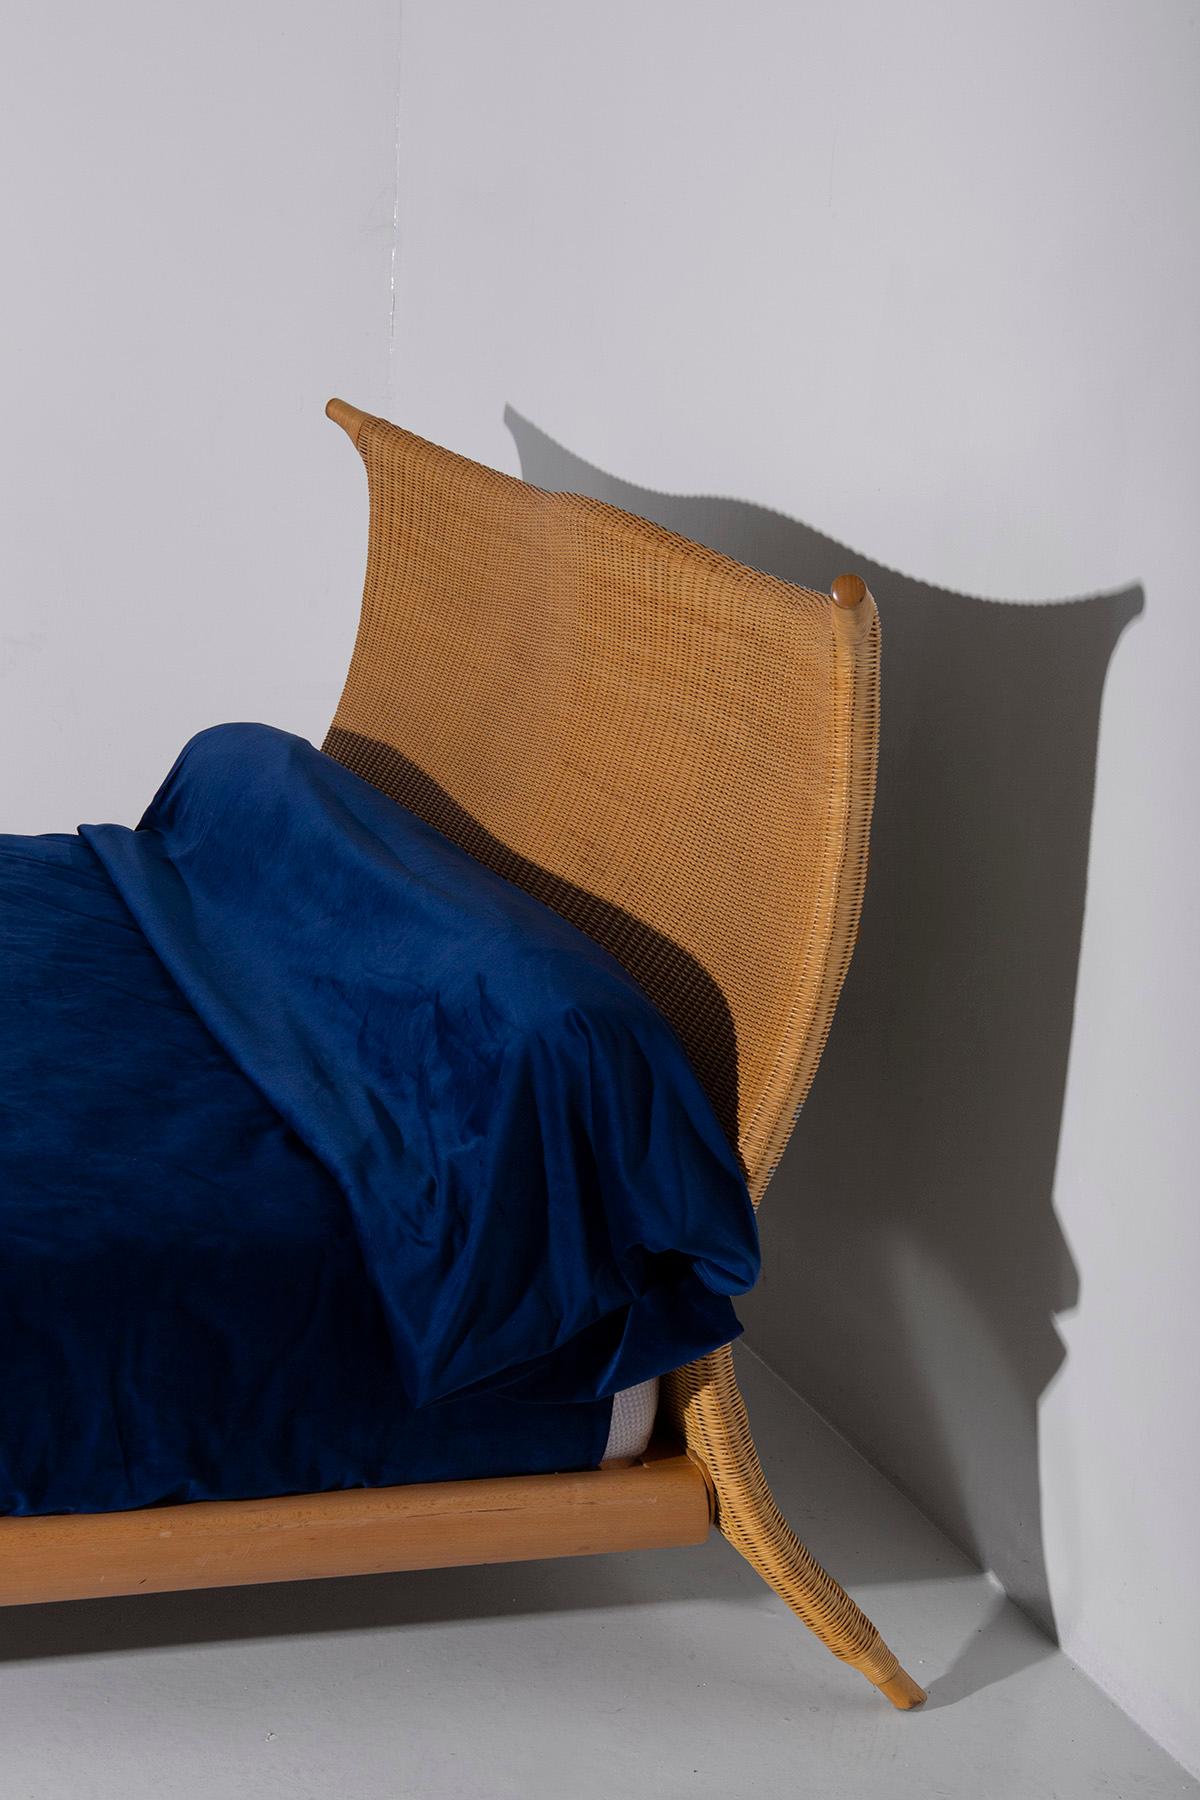 Italian rattan bed by PierAntonio Bonacina, with label 6